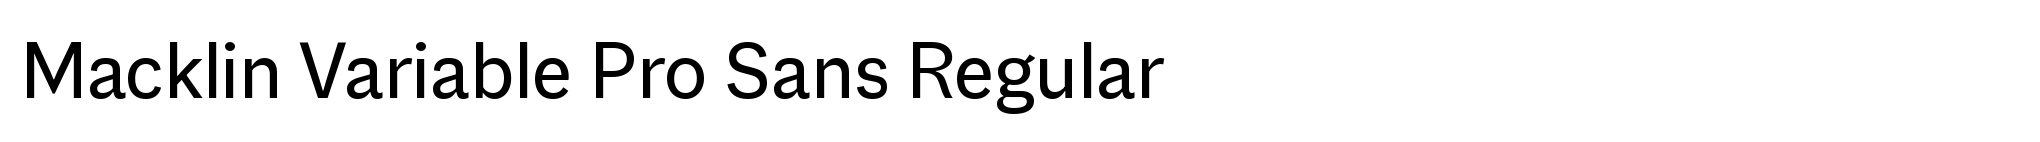 Macklin Variable Pro Sans Regular image